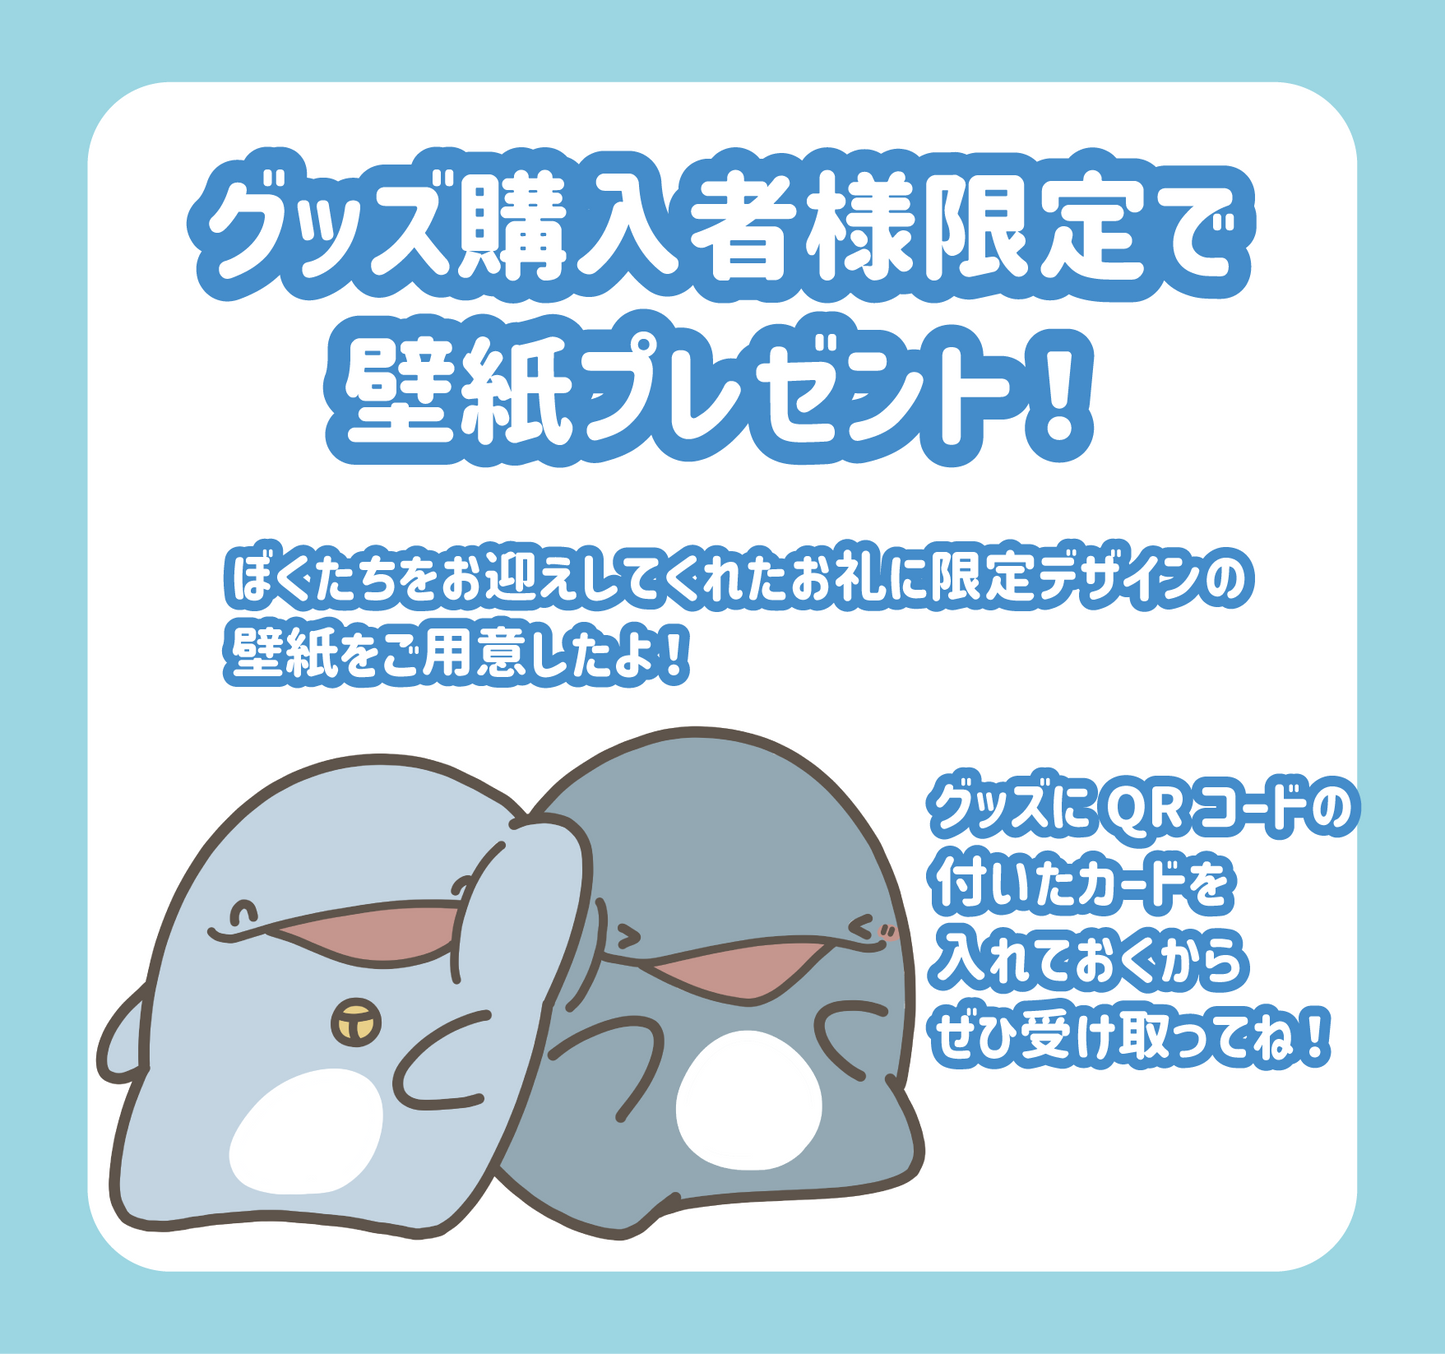 【親子イルカ】ミニミニマグカップキーホルダー【5月中旬発送】